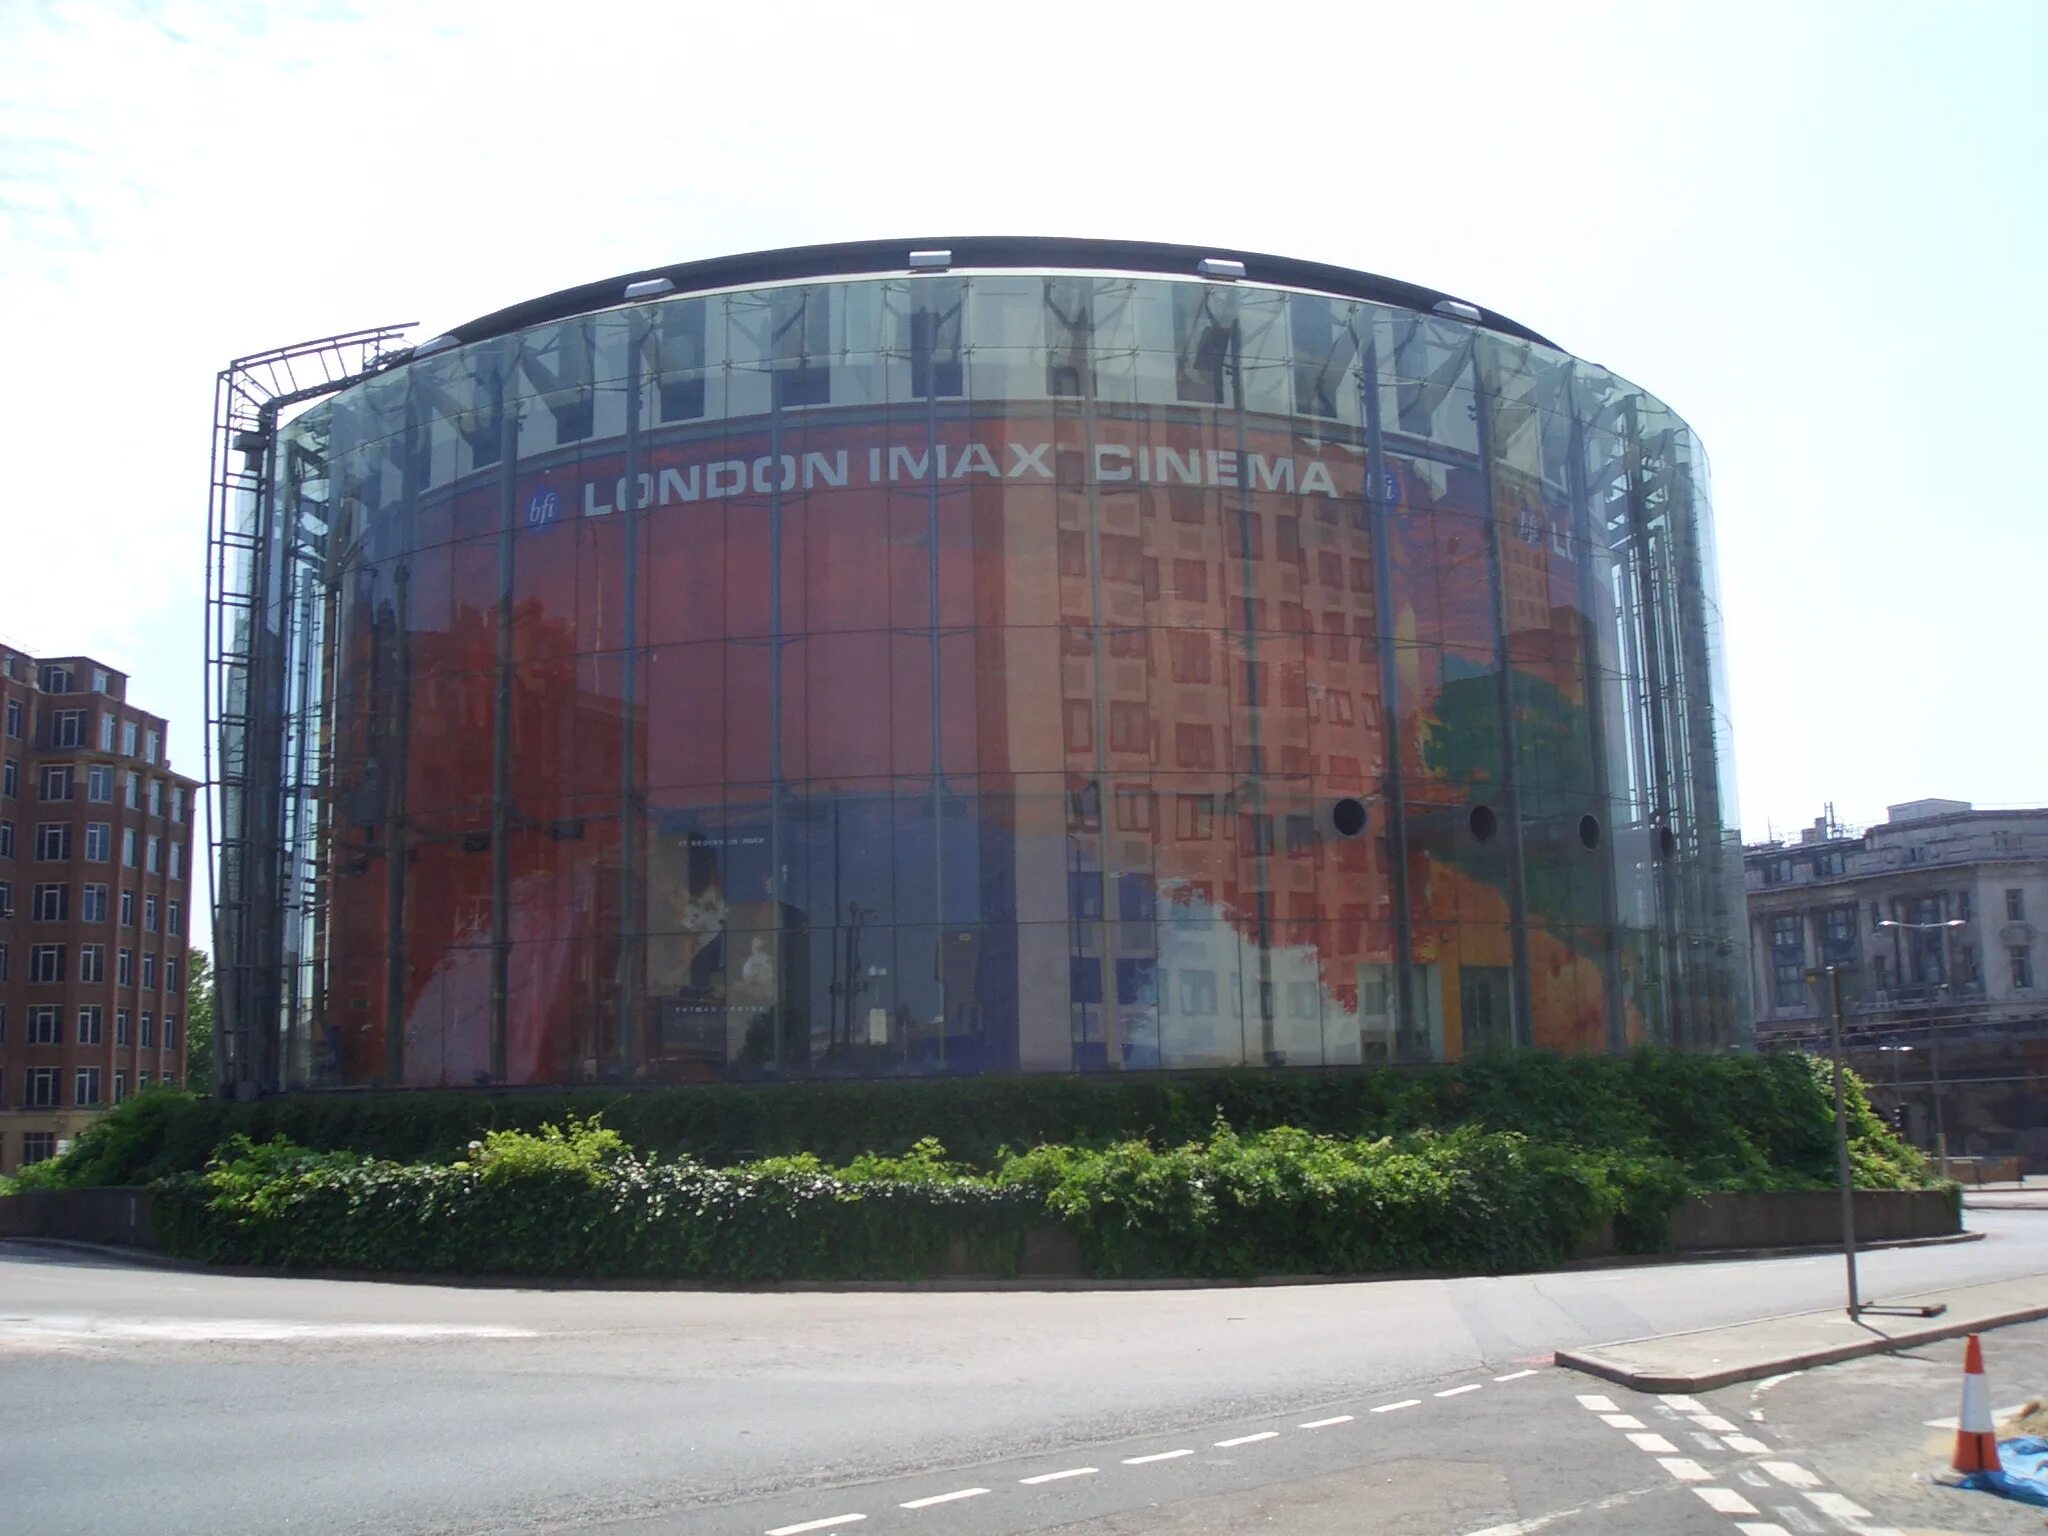 London cinemas. BFI В Лондоне IMAX. Лондонский кинотеатр ИМАКС. Лондон Waterloo Road 1 BFI IMAX. Кинотеатр BFI London IMAX внутри.